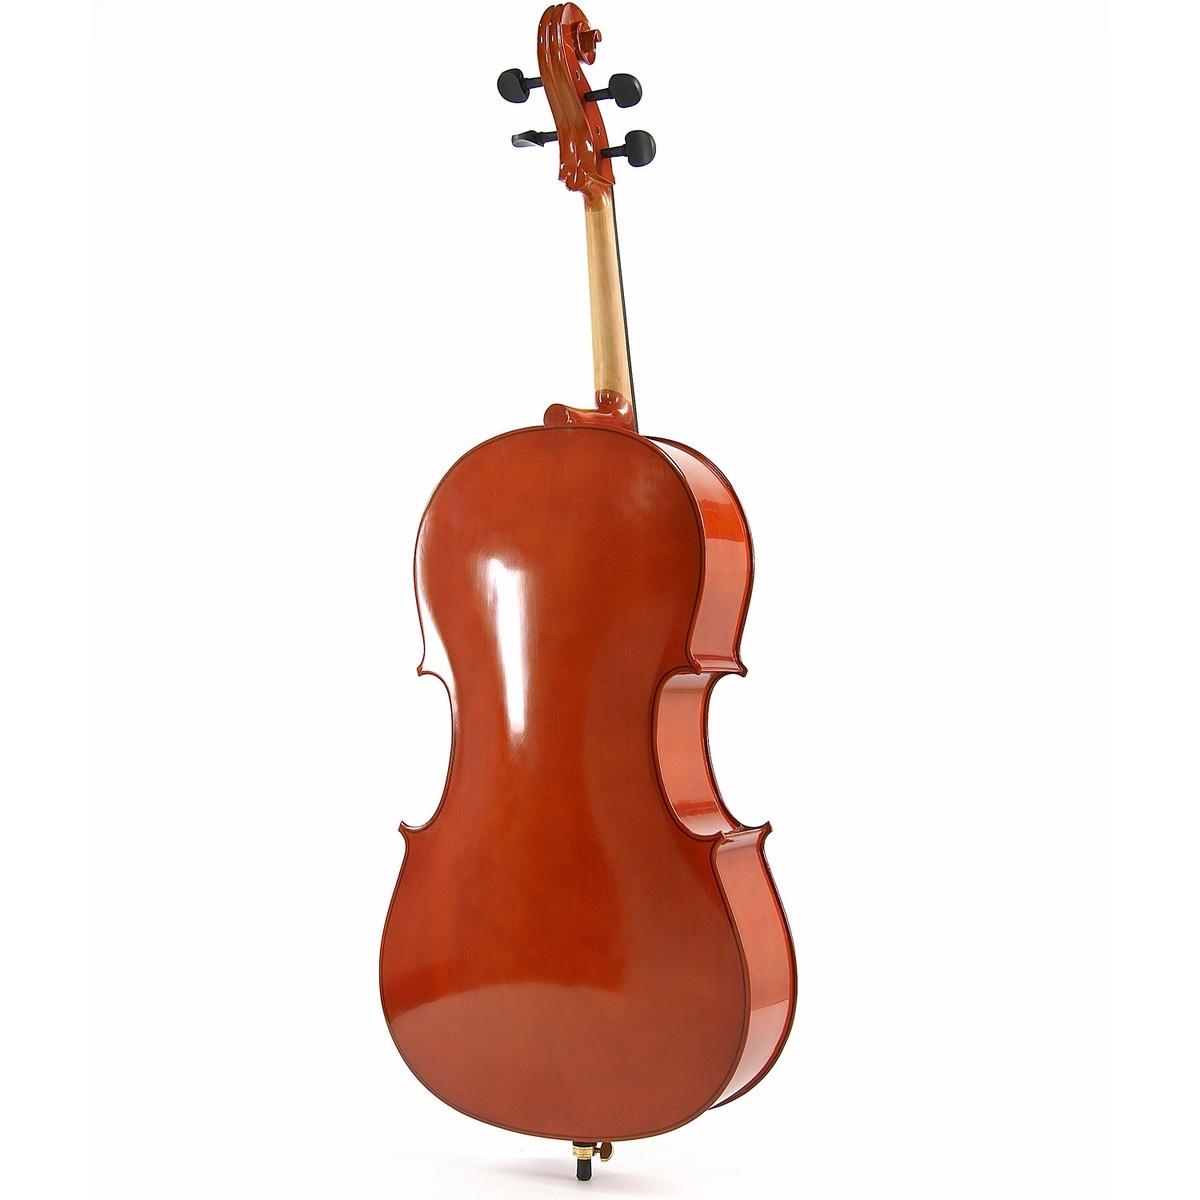 Vox meister violoncello 4/4 con custodia ed archetto